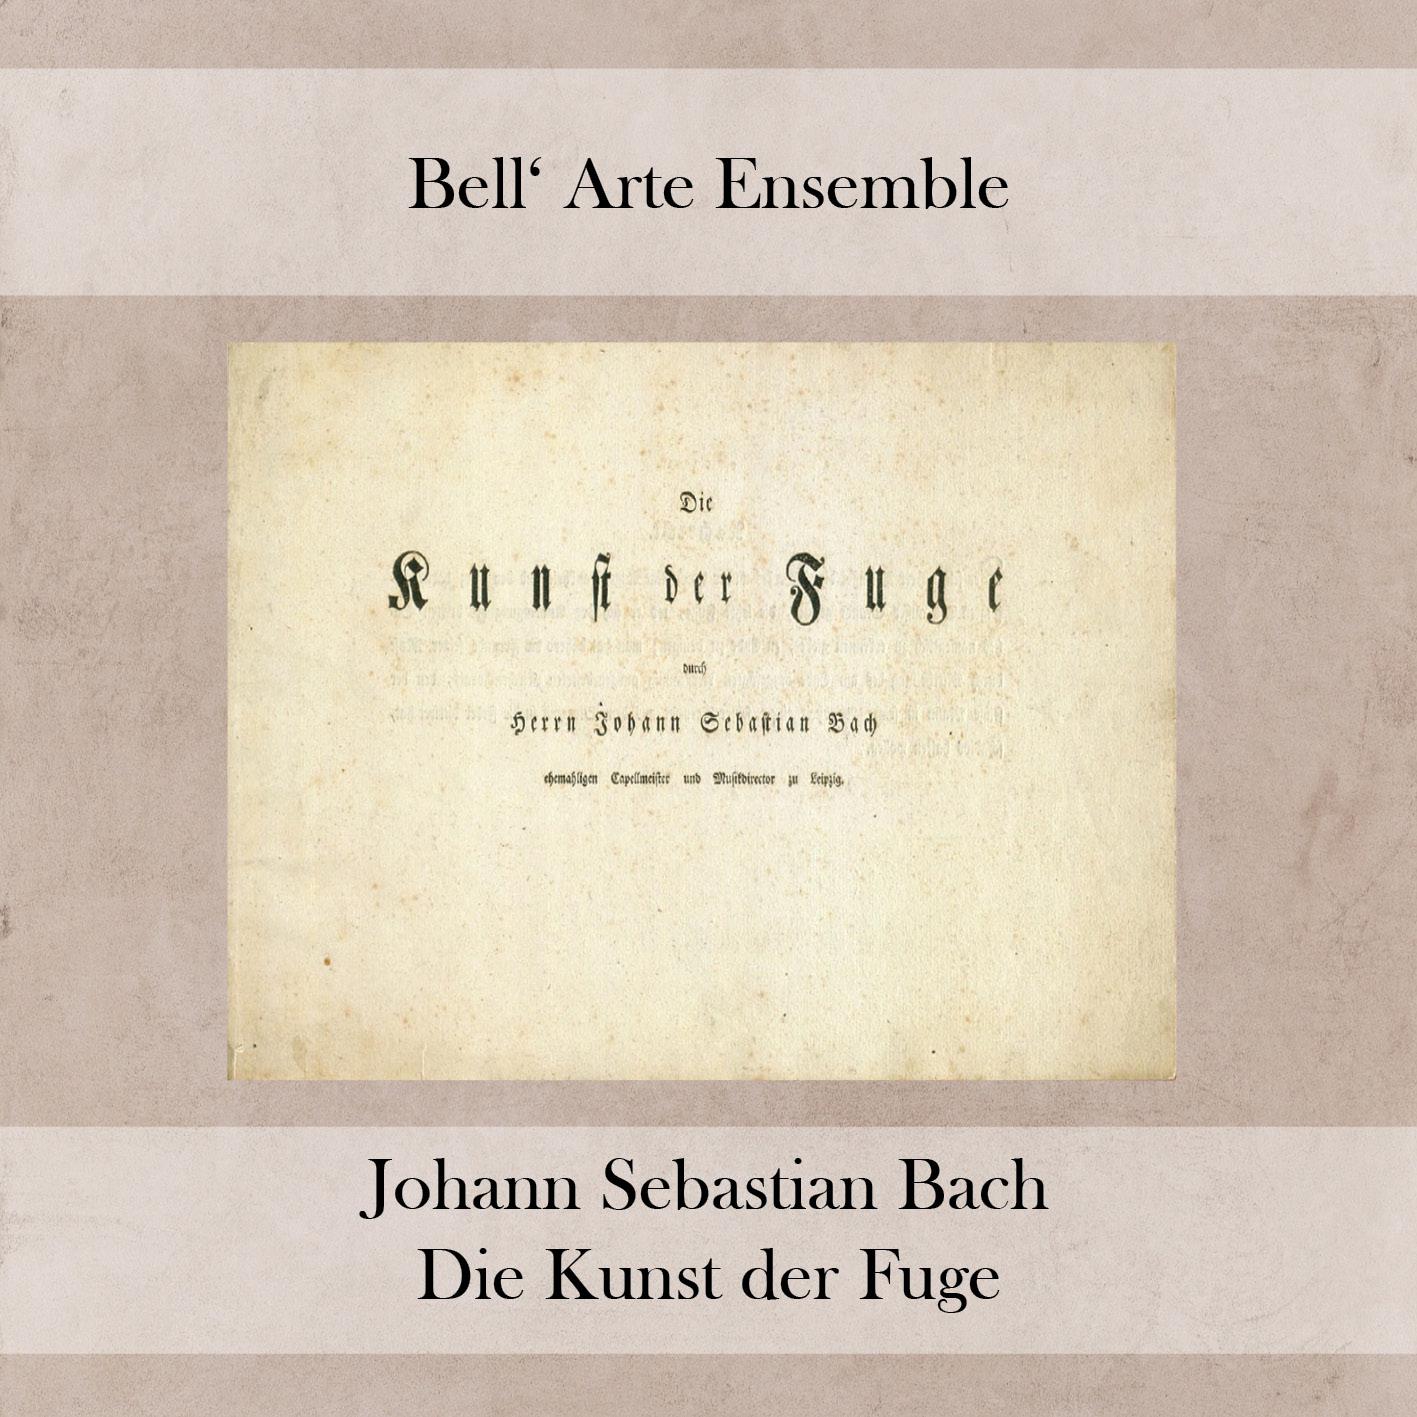 Die Kunst der Fuge in D Minor, BWV 1080:VI. Contrapunctus 6 a 4 in Stylo Francese